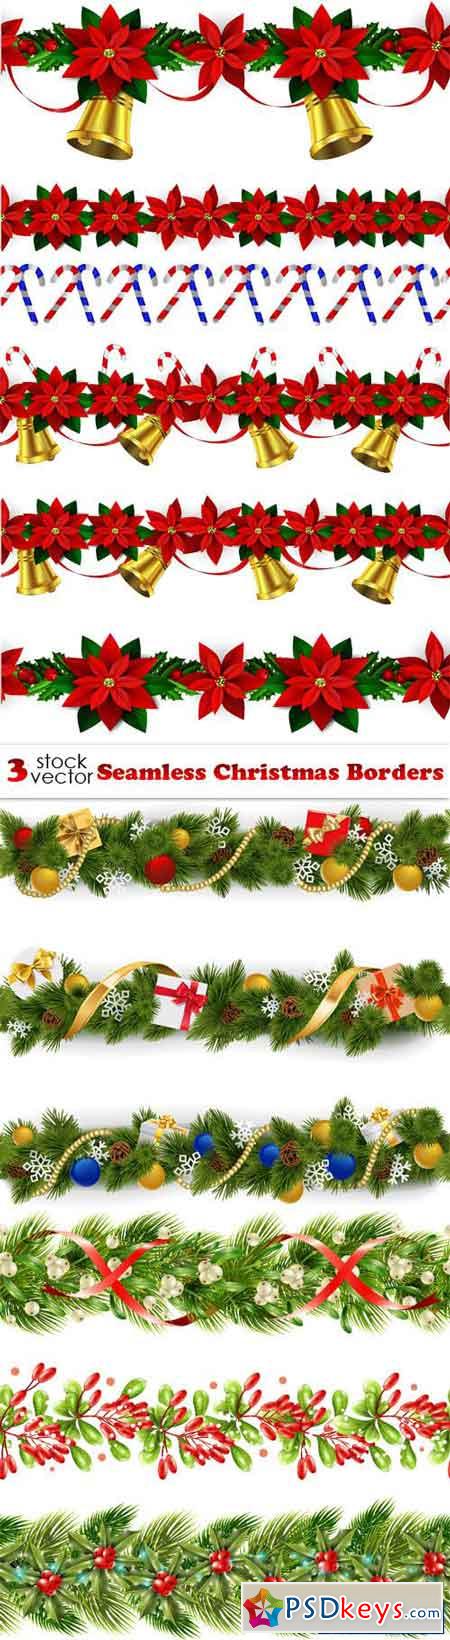 Seamless Christmas Borders